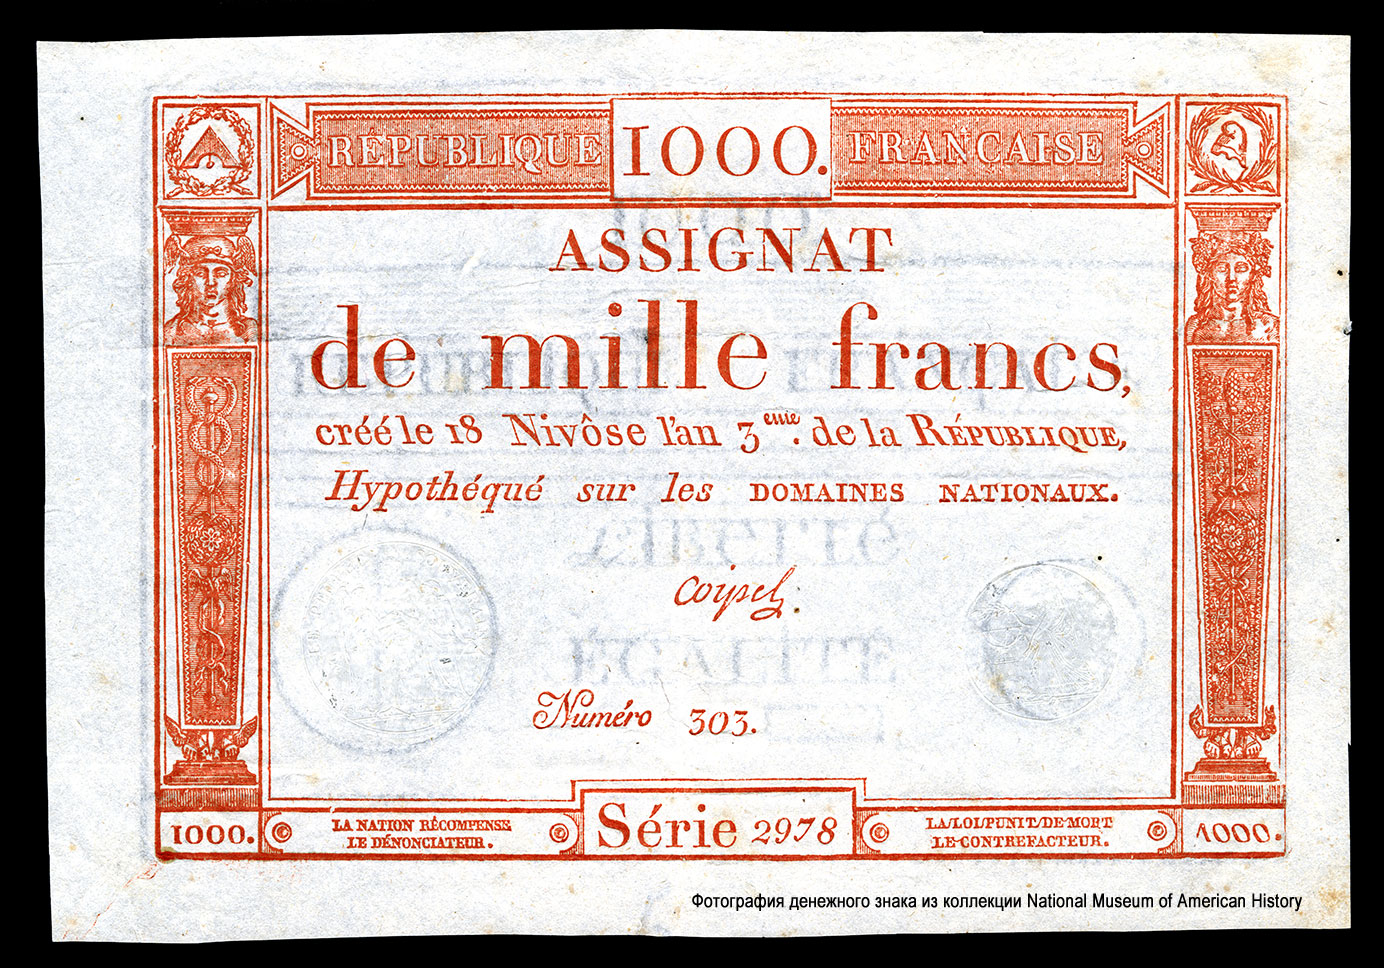 République française Assignat 1000 francs 1795